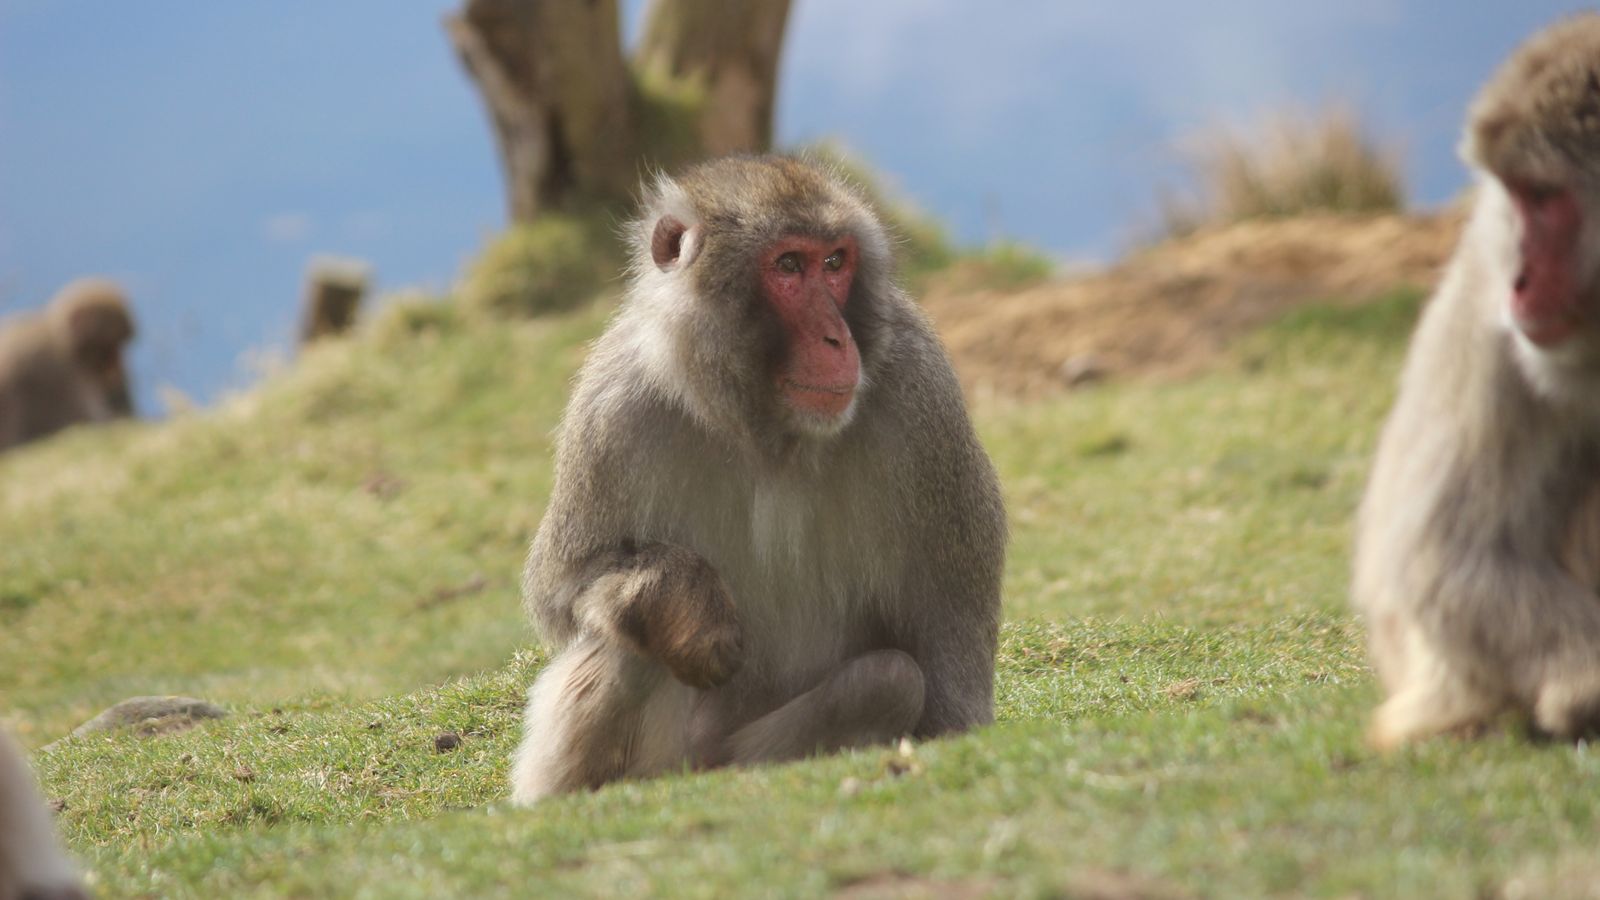 Търсене на изчезнала маймуна: жителите на Хайленд са призовани да скрият кофите за хранителни отпадъци и хранилки за птици